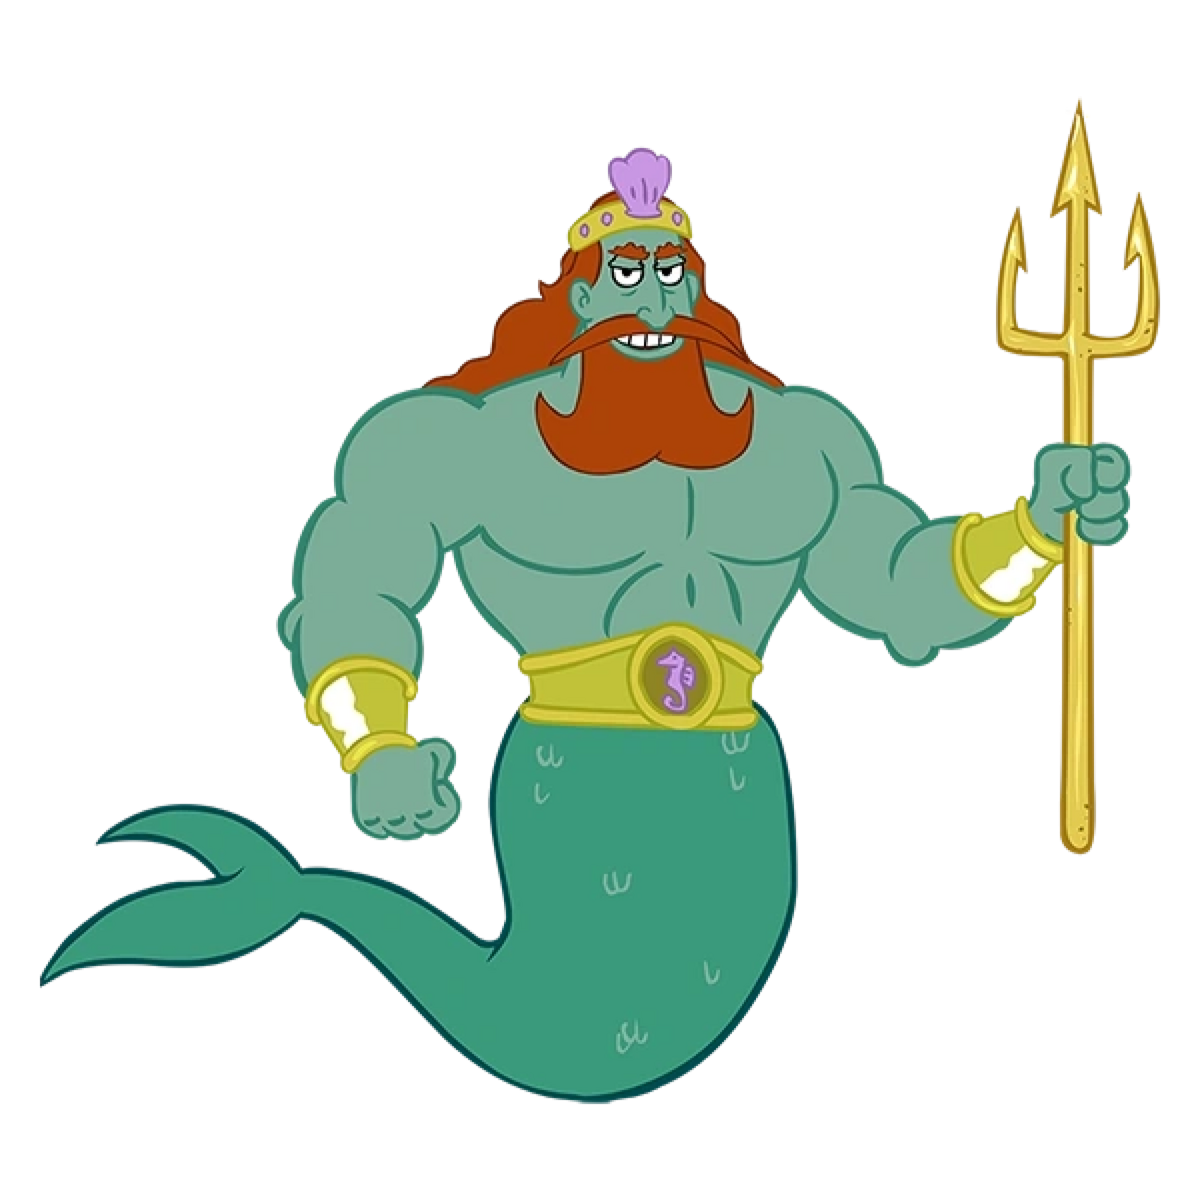 Царь посейдон. Король Нептун из губки Боба. Король Нептун. Нептун морской царь. Царь Посейдон губка Боб.